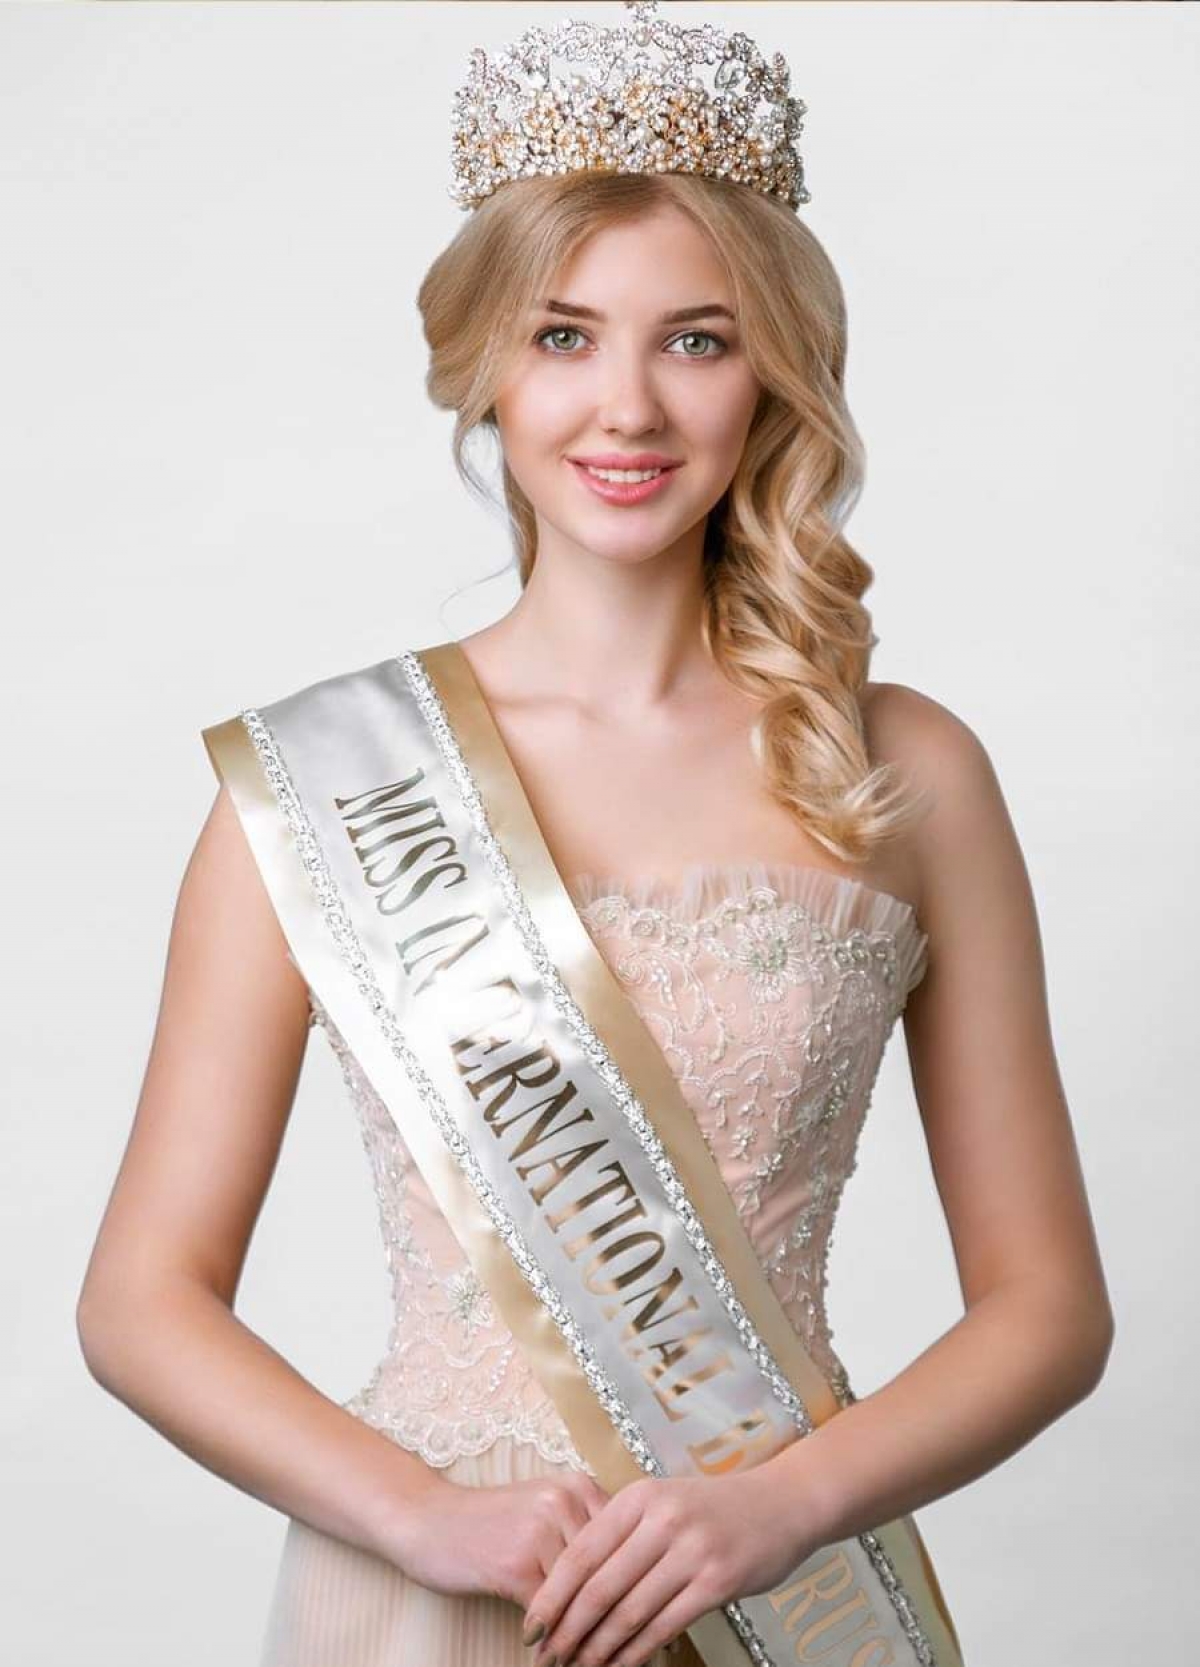 Chuyên trang sắc đẹp Missology thông tin, Marie Perviy, 24 tuổi sẽ chính thức đại diện cho Belarus cử đi tranh tài tại cuộc thi Hoa hậu Trái đất 2021. Vì dịch Covid-19, Belarus năm nay không tổ chức thi hoa hậu mà thí sinh được chọn qua một hội đồng giám khảo. Ảnh: Missology